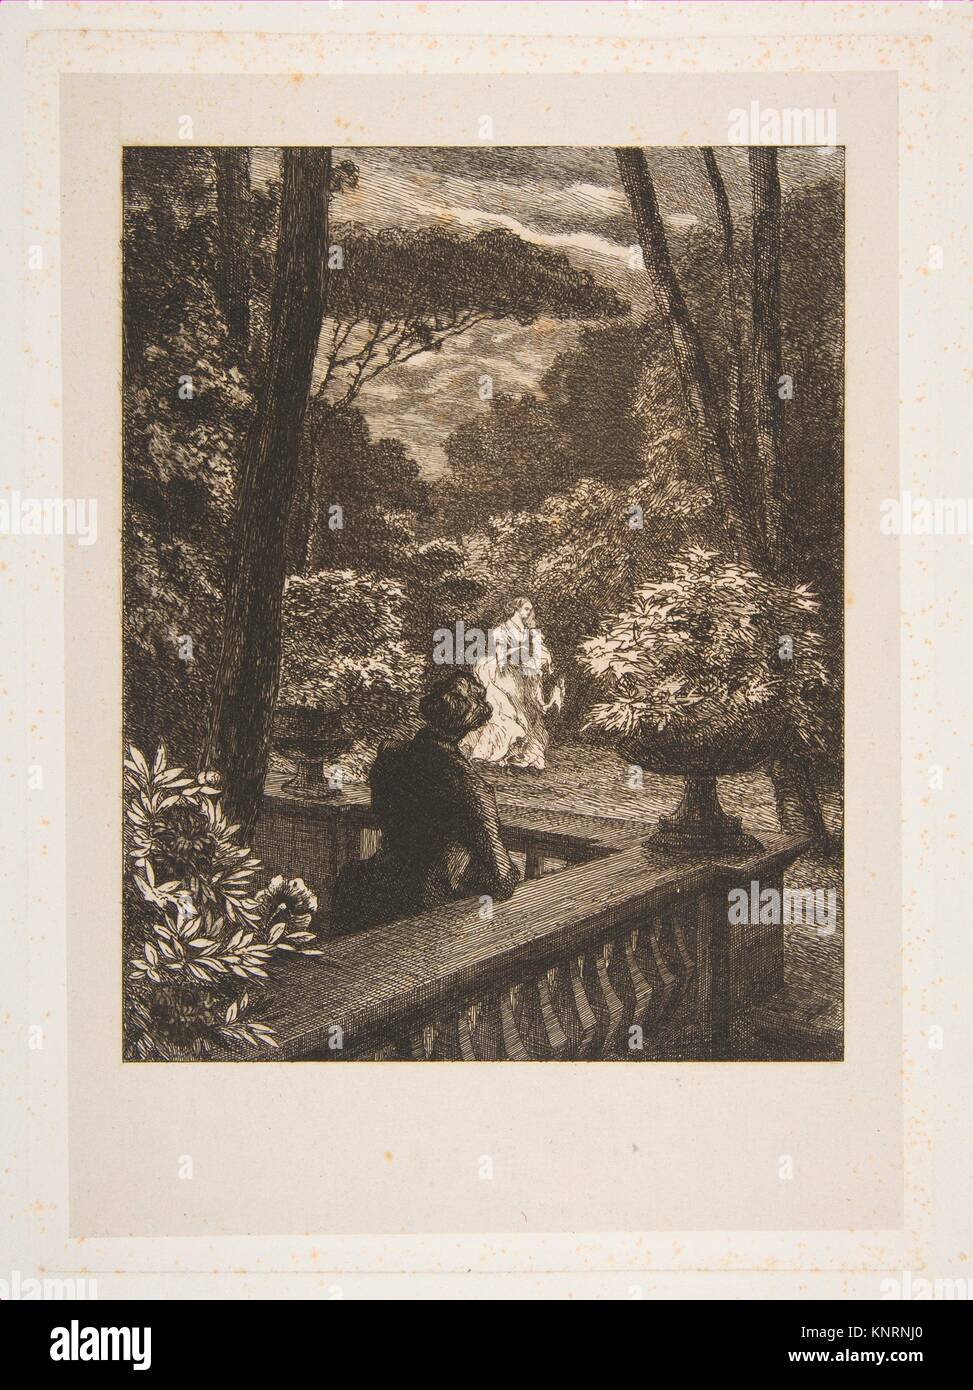 Illustrations for Chansons, by Charles Desforges de Vassens. Artist: Félix Bracquemond (French, Paris 1833-1914 Sèvres); Date: 1833-1914; Medium: Stock Photo